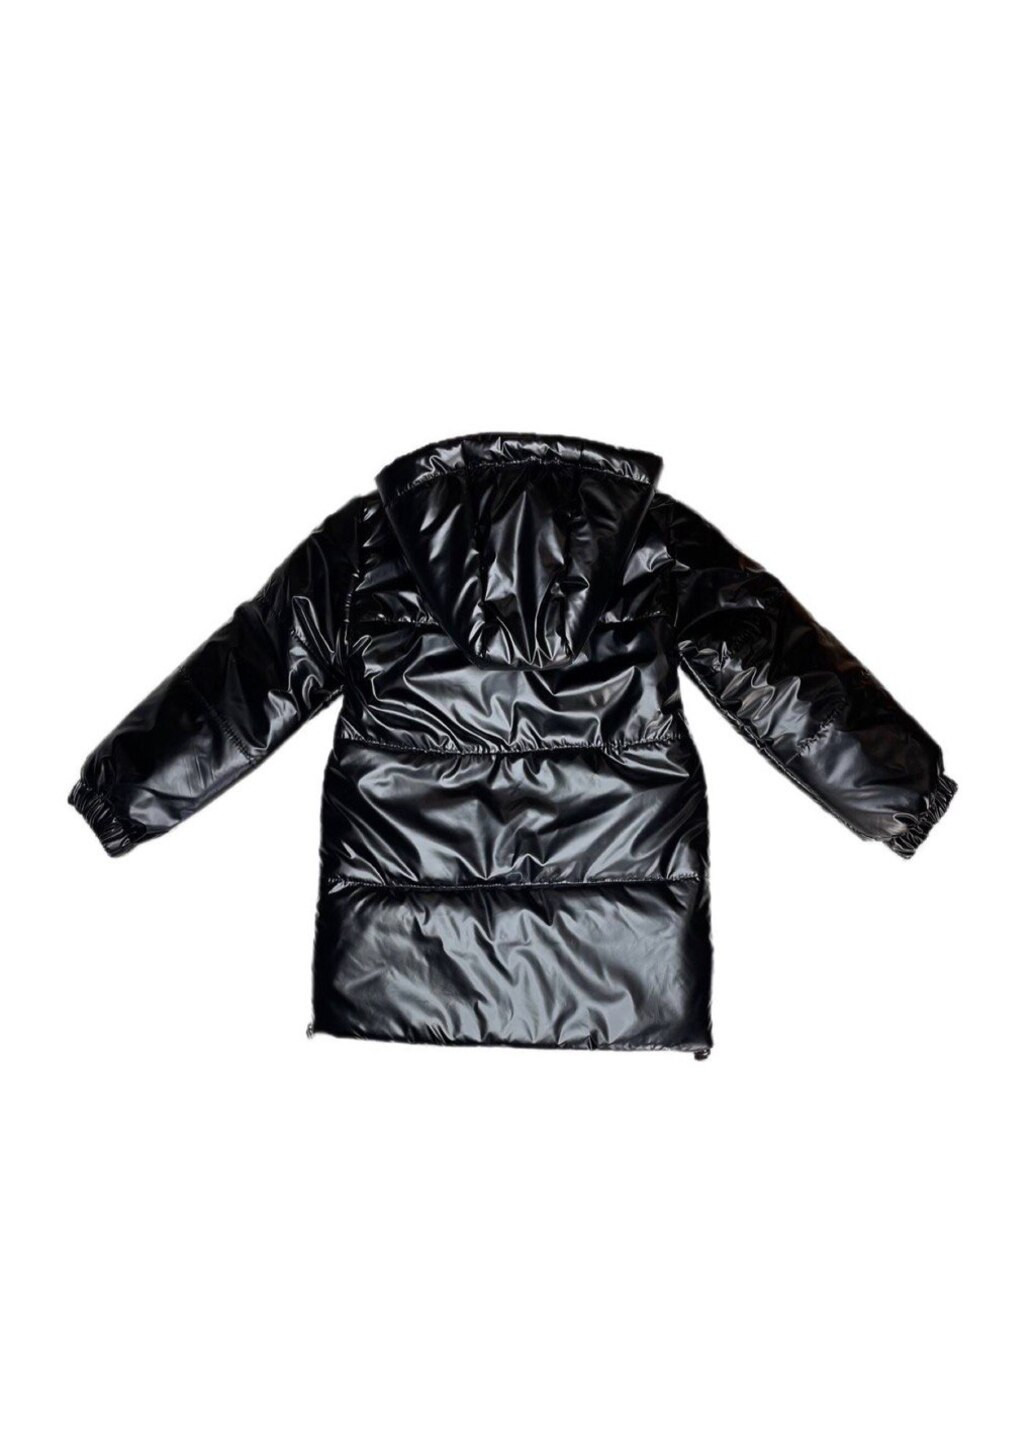 Черная демисезонная демисезонная куртка для девочки в черном цвете. Модняшки